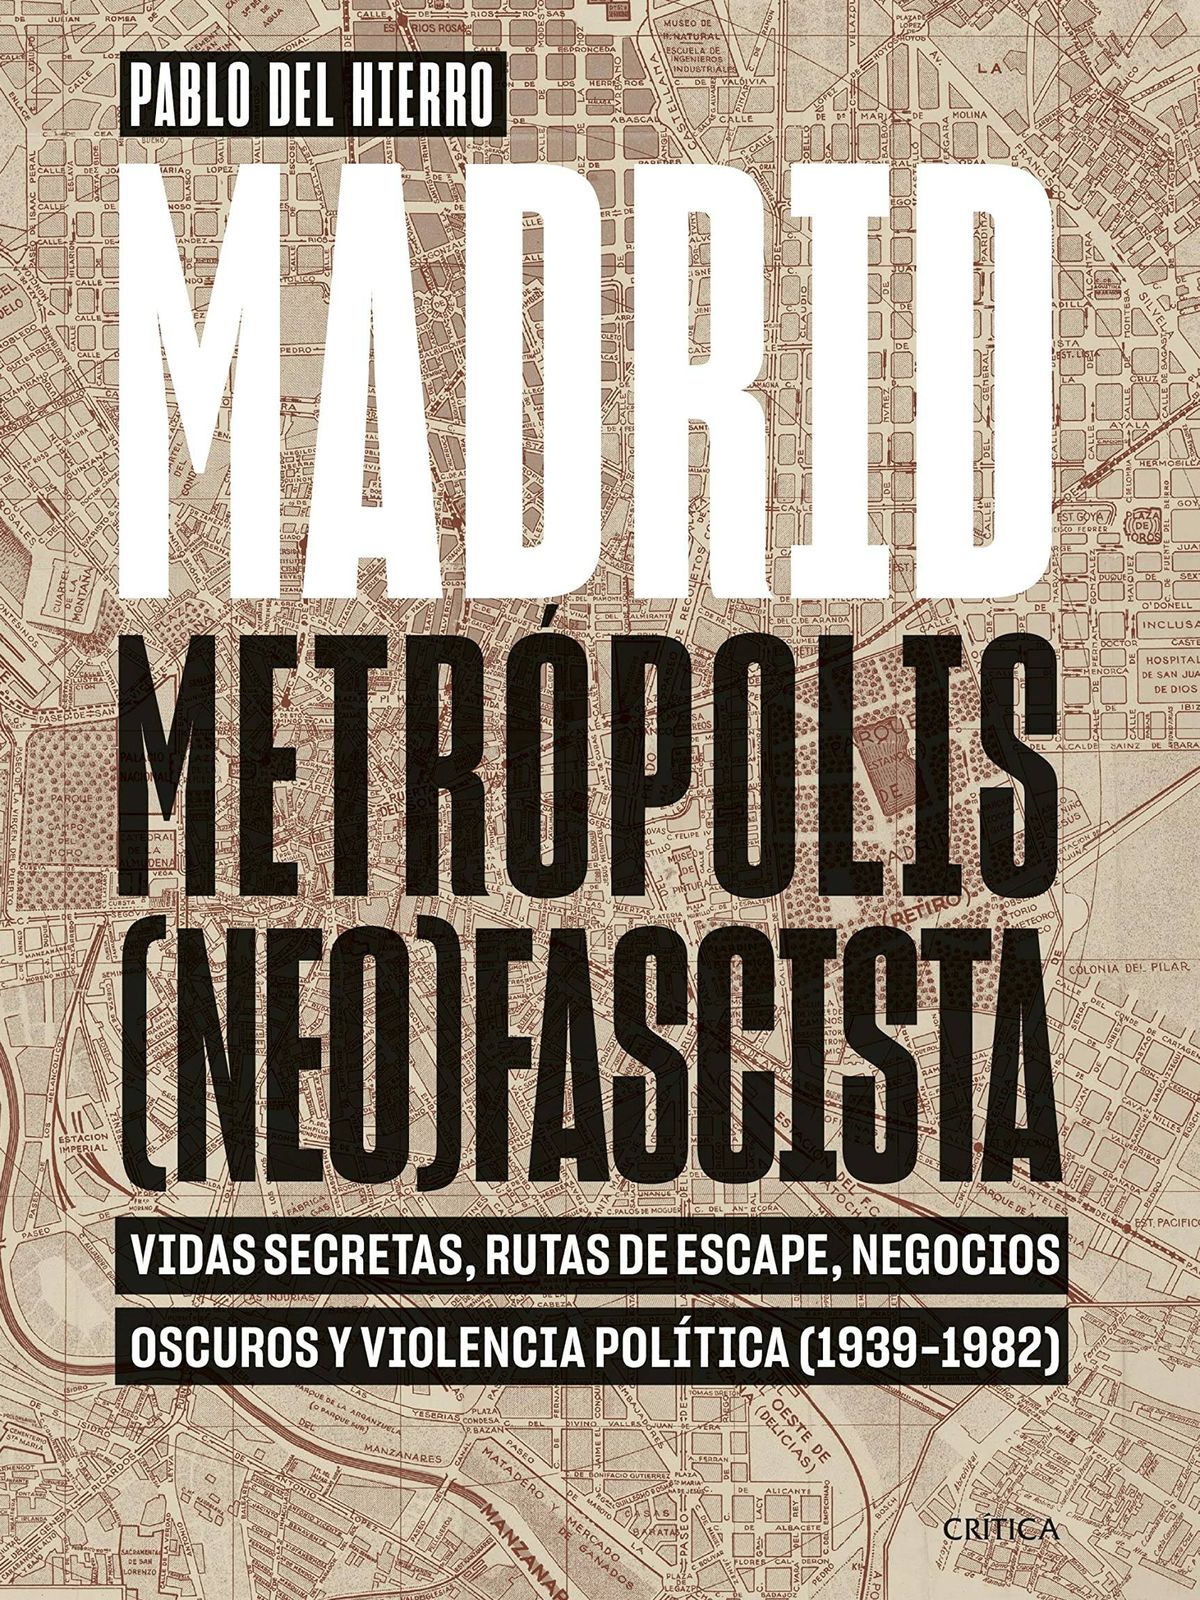 Portada de 'Madrid, metrópolis (neo)fascista', de Pablo del Hierro. 